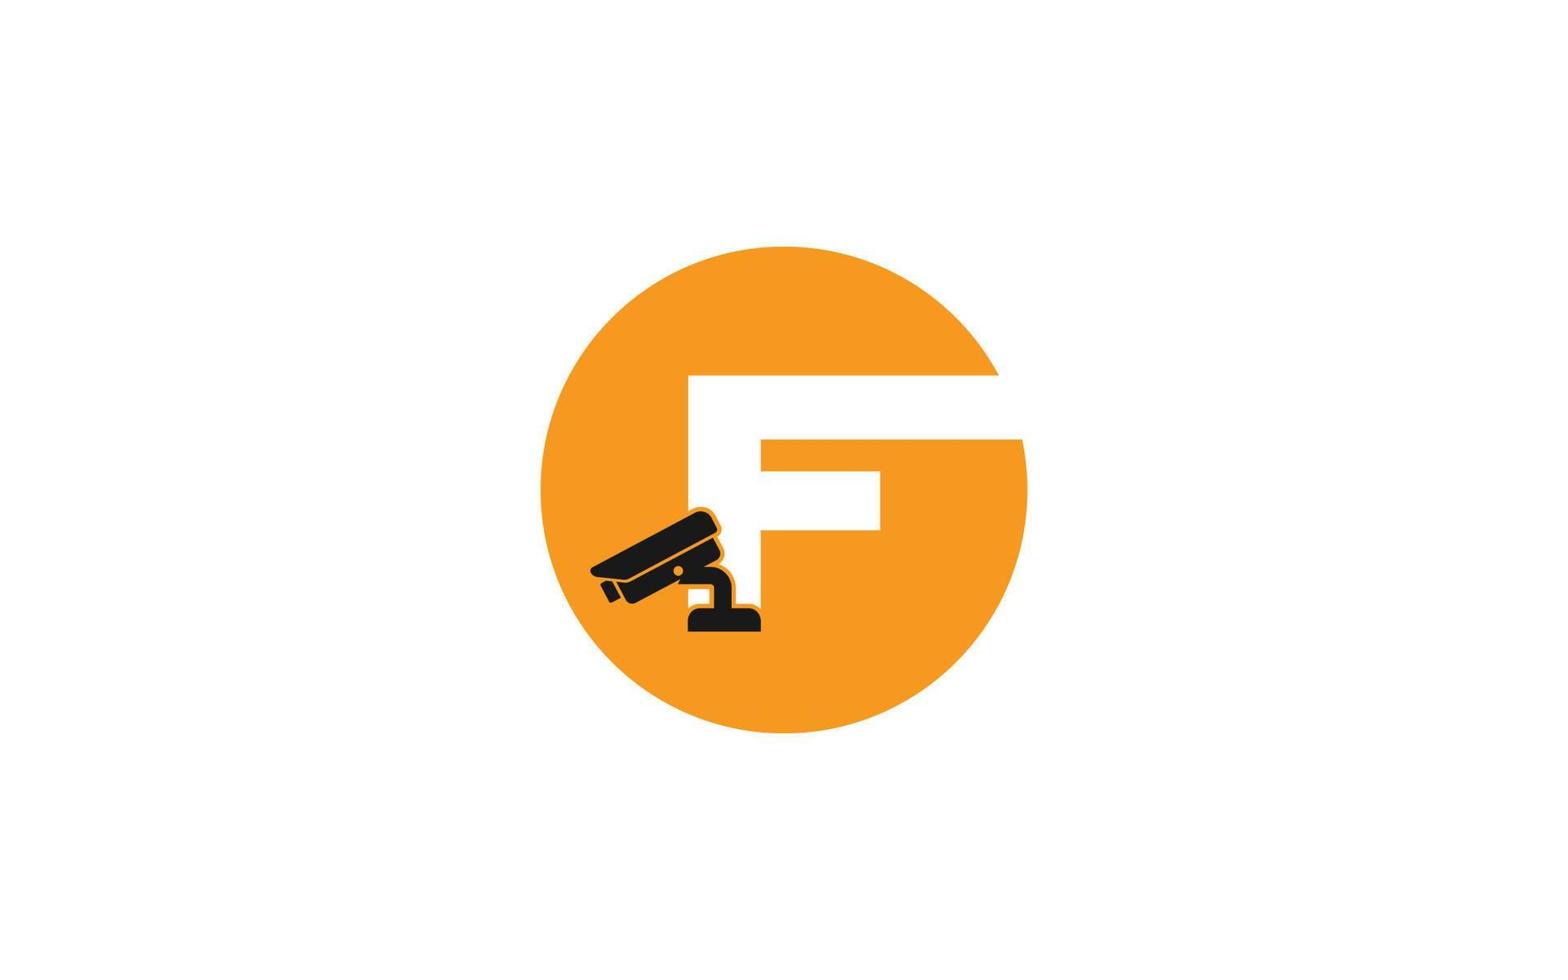 f logo cctv pour l'identité. illustration vectorielle de modèle de sécurité pour votre marque. vecteur